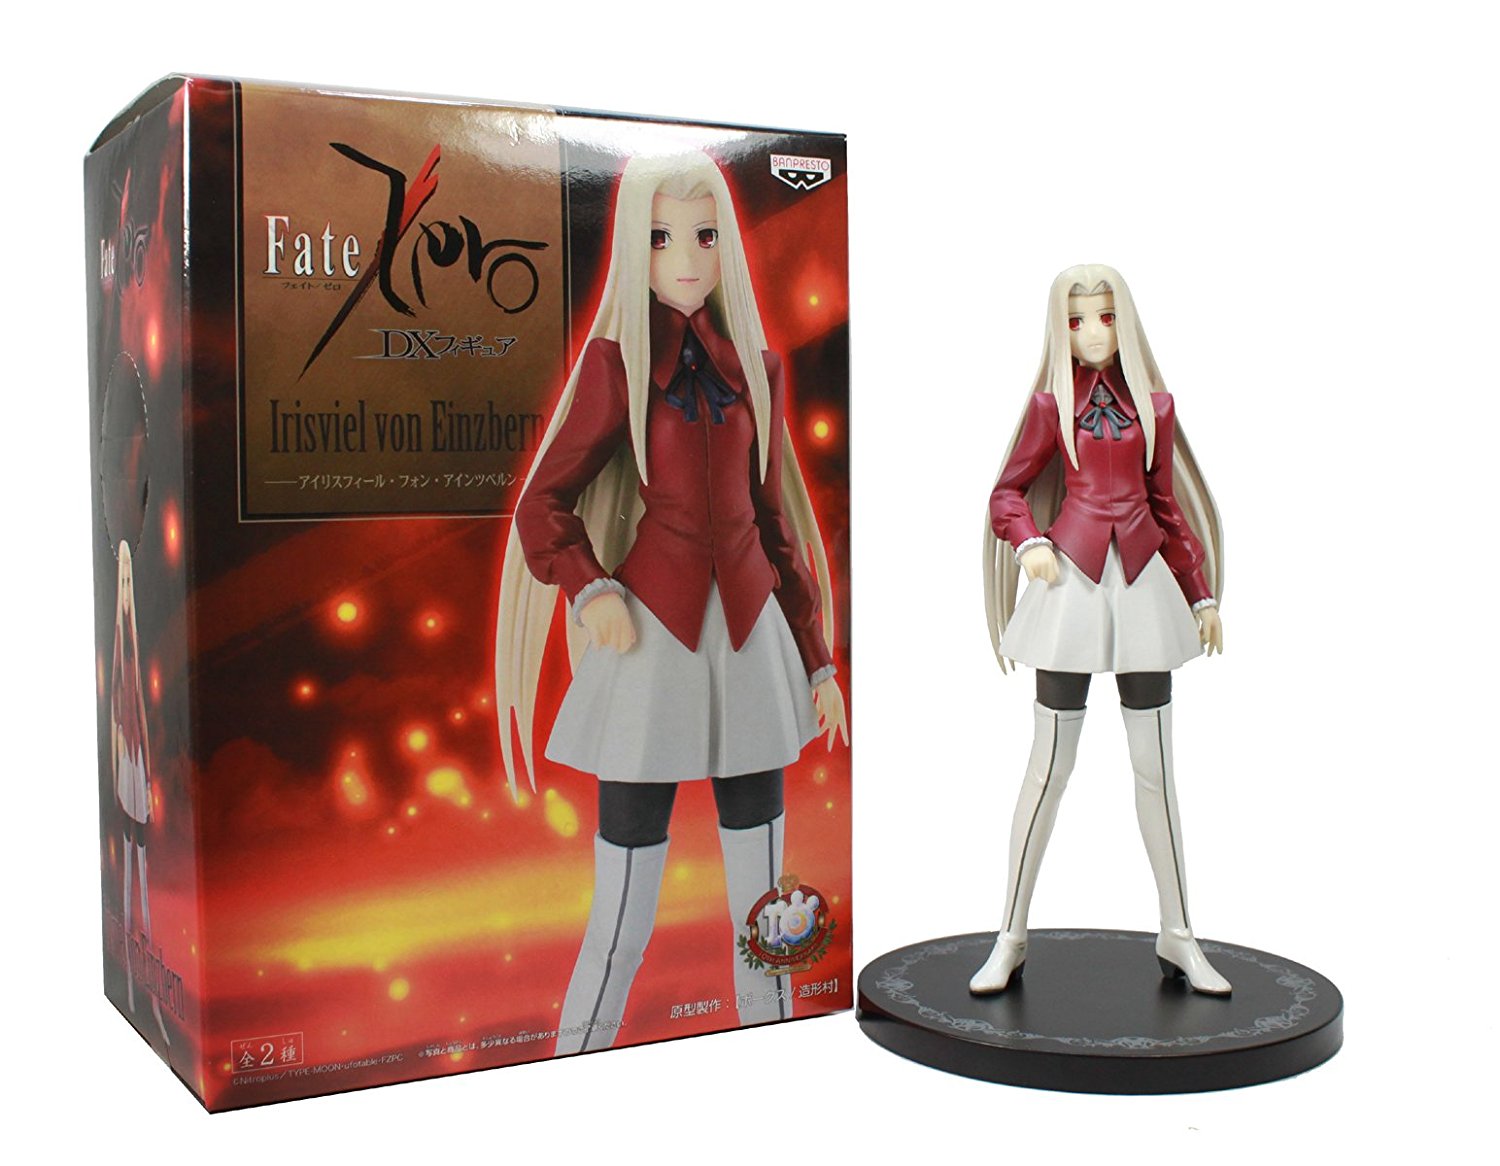 Irisviel von Einzbern, 10th Anniversary, DX Figure, Fate / Zero, Banpresto